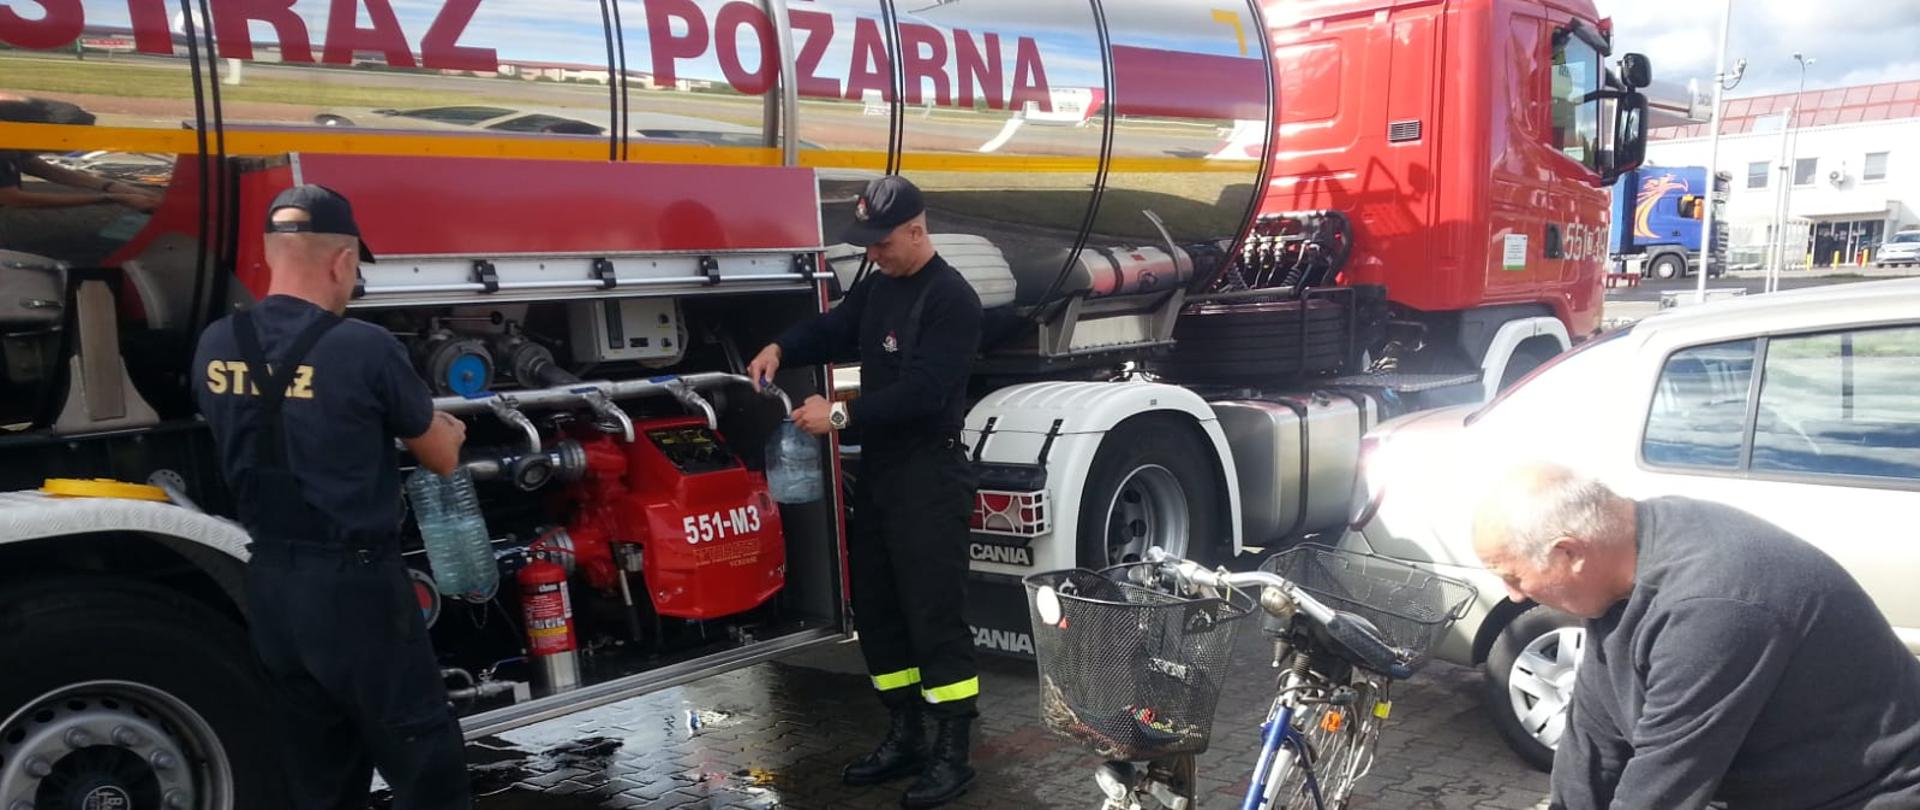 Zdjęcie przedstawia cysternę strażacką wraz ze strażakami którzy napelniają pojemniki mieszkańcom wodą.